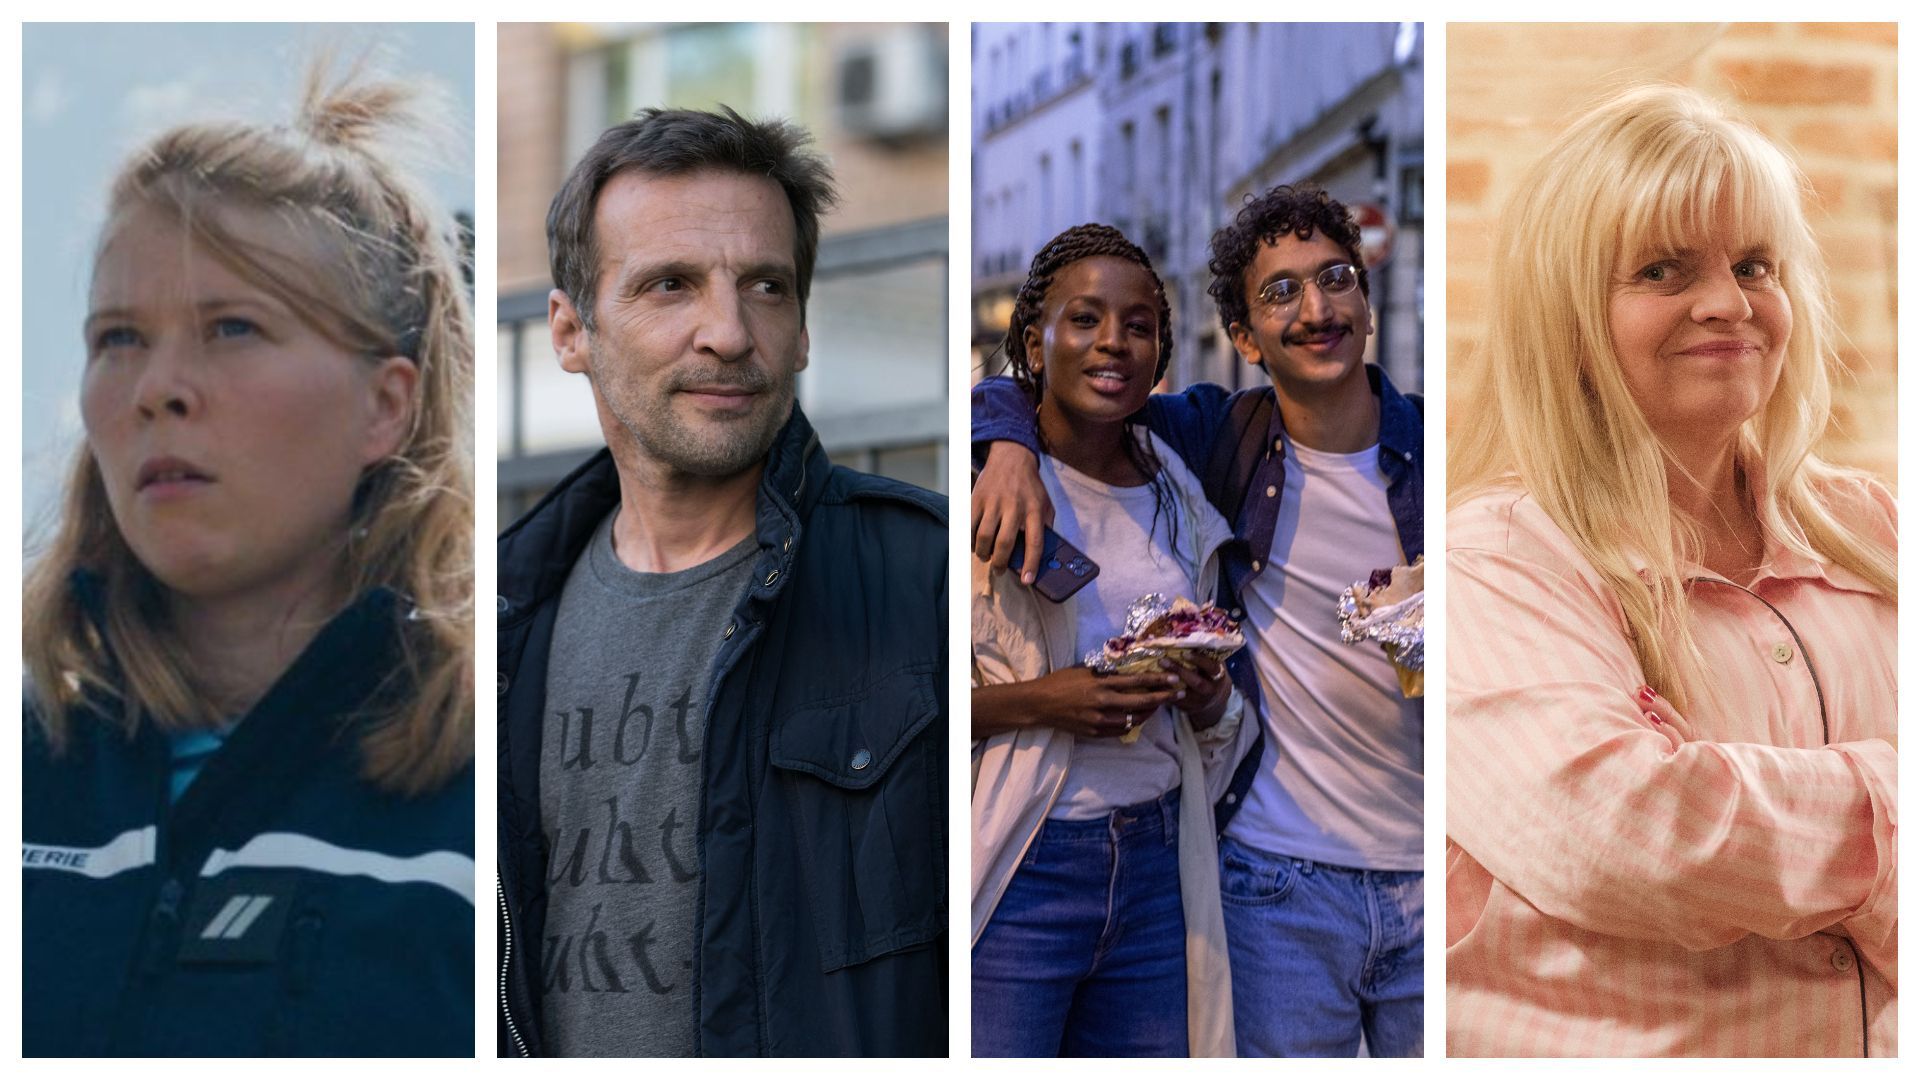 India Hair dans "Des Gens Bien", Mathieu Kassovitz, Mariama Gueye, Younès Boucif dans "Drôle", Isabelle Nanty